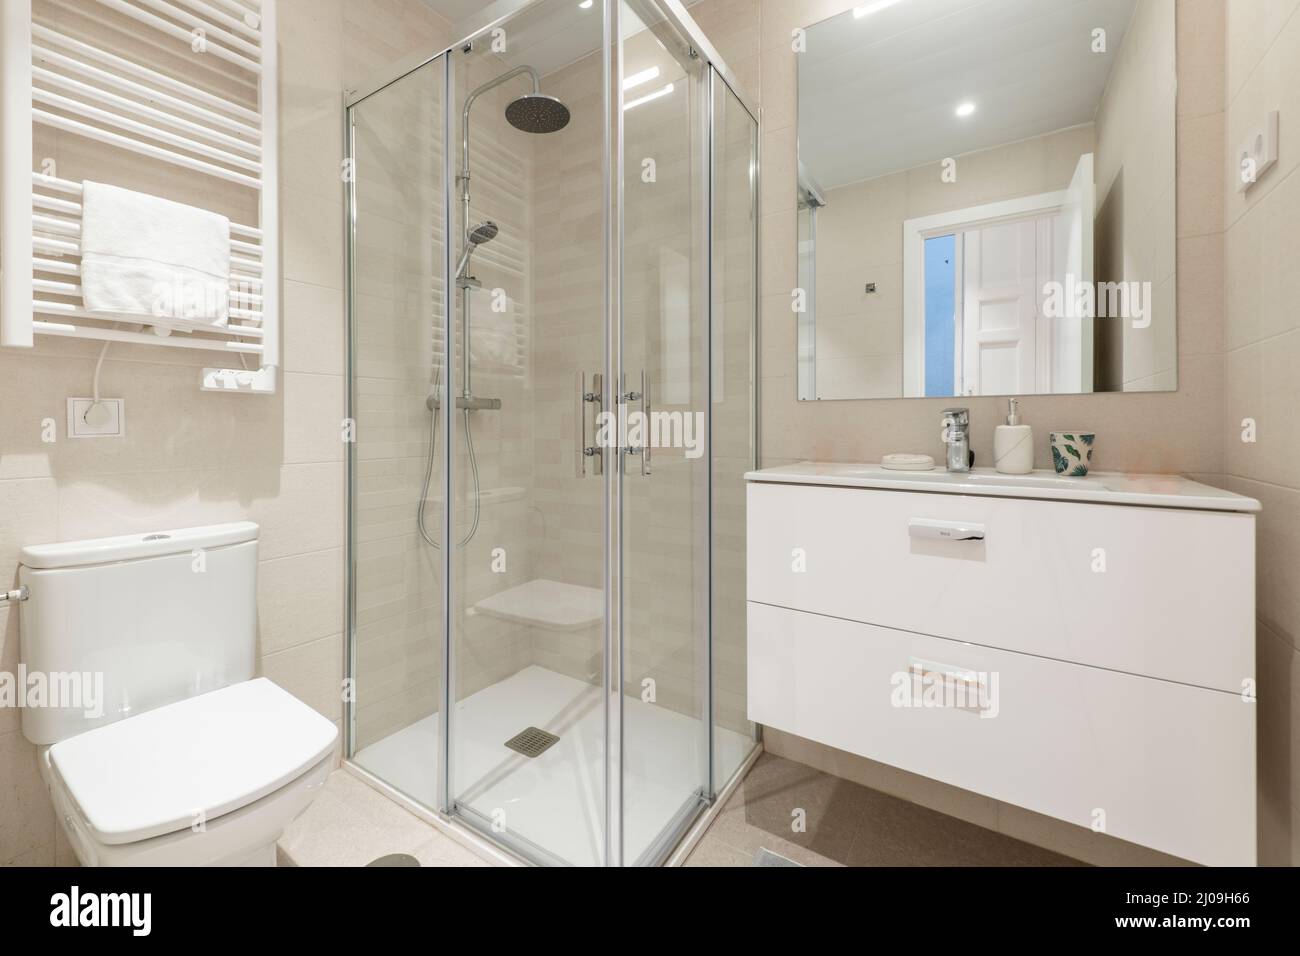 Salle de bains avec cabine de douche carrée avec cloison en verre, lavabo mural en porcelaine blanche, miroir rectangulaire et porte-serviette chauffant blanc Banque D'Images